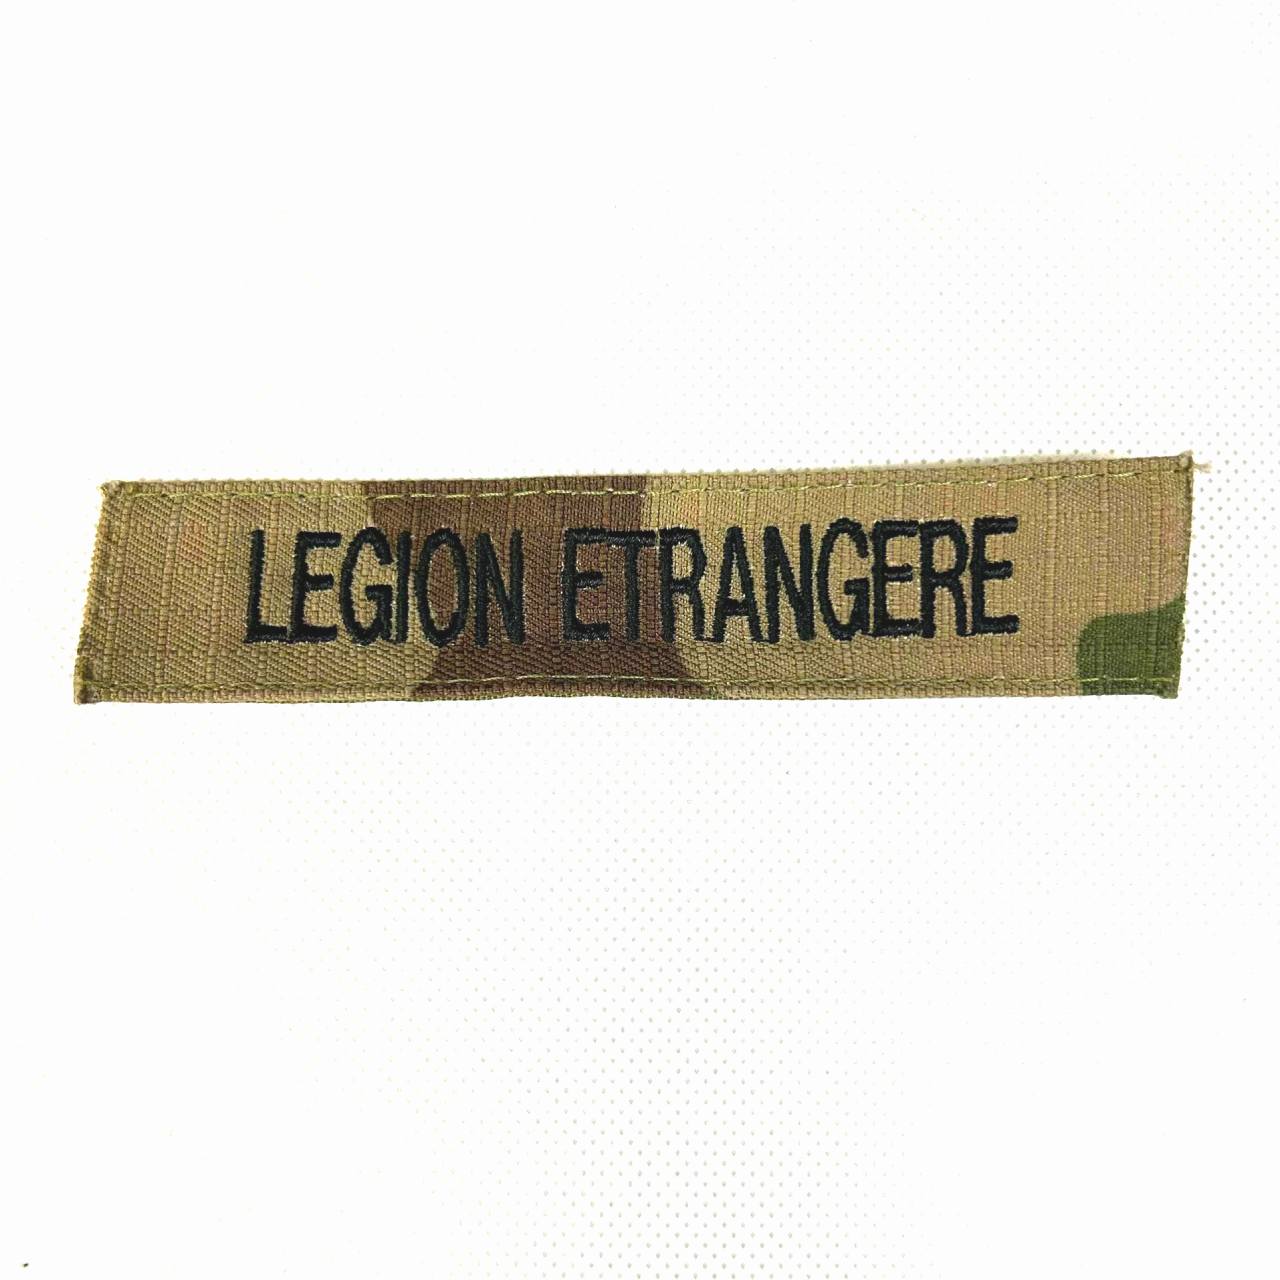 Patch da Legião Estrangeira